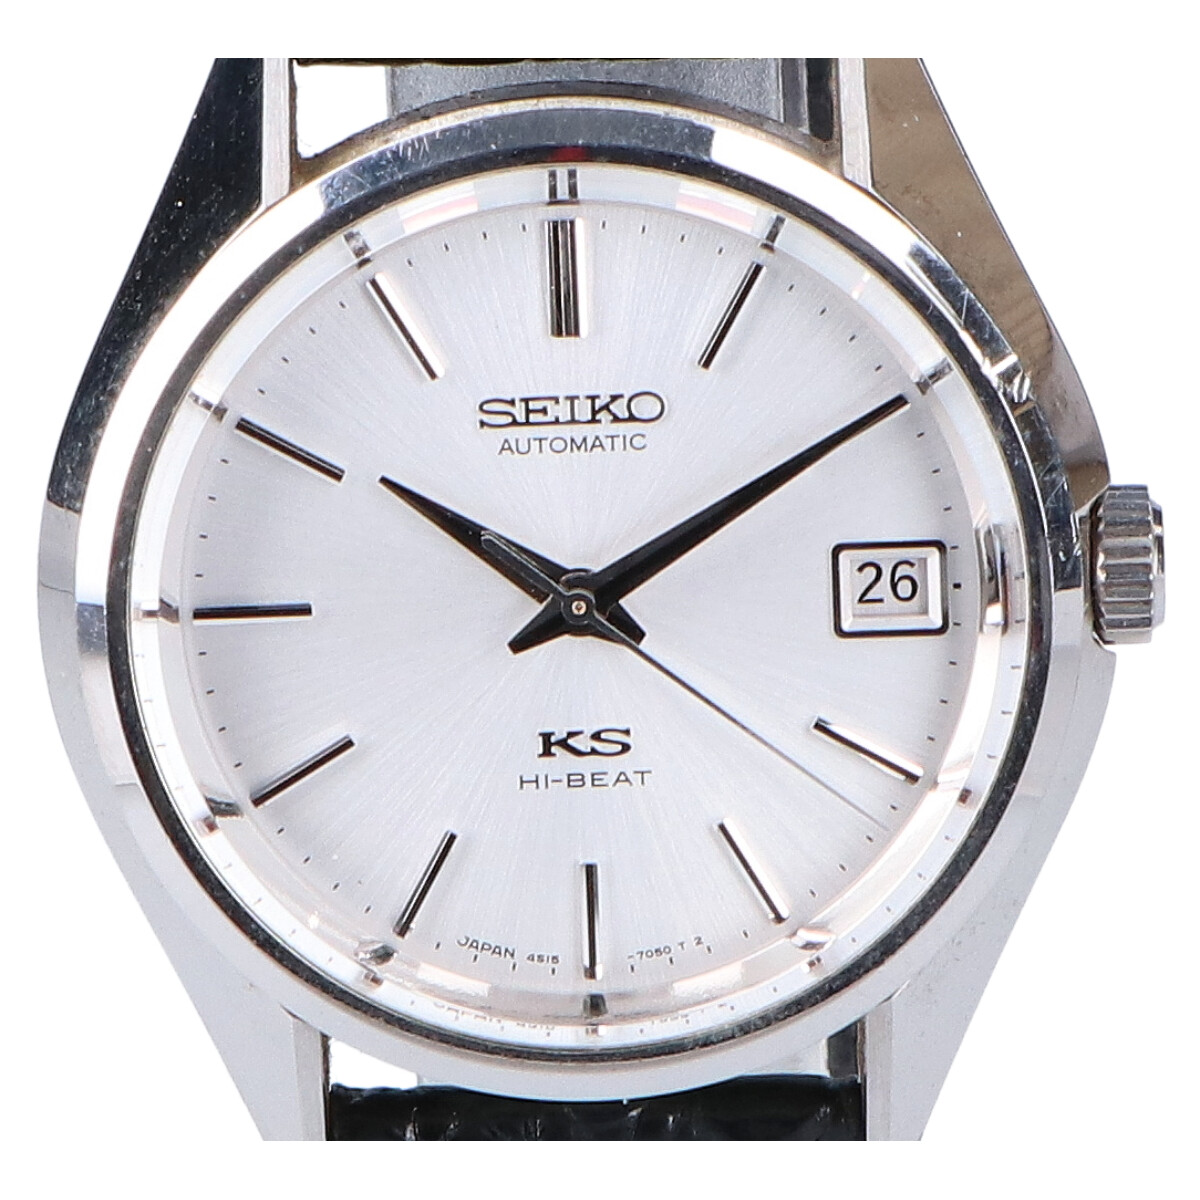 セイコーの4S15-7040 キングセイコー ヒストリカルコレクション 2000本限定 自動巻き時計の買取実績です。